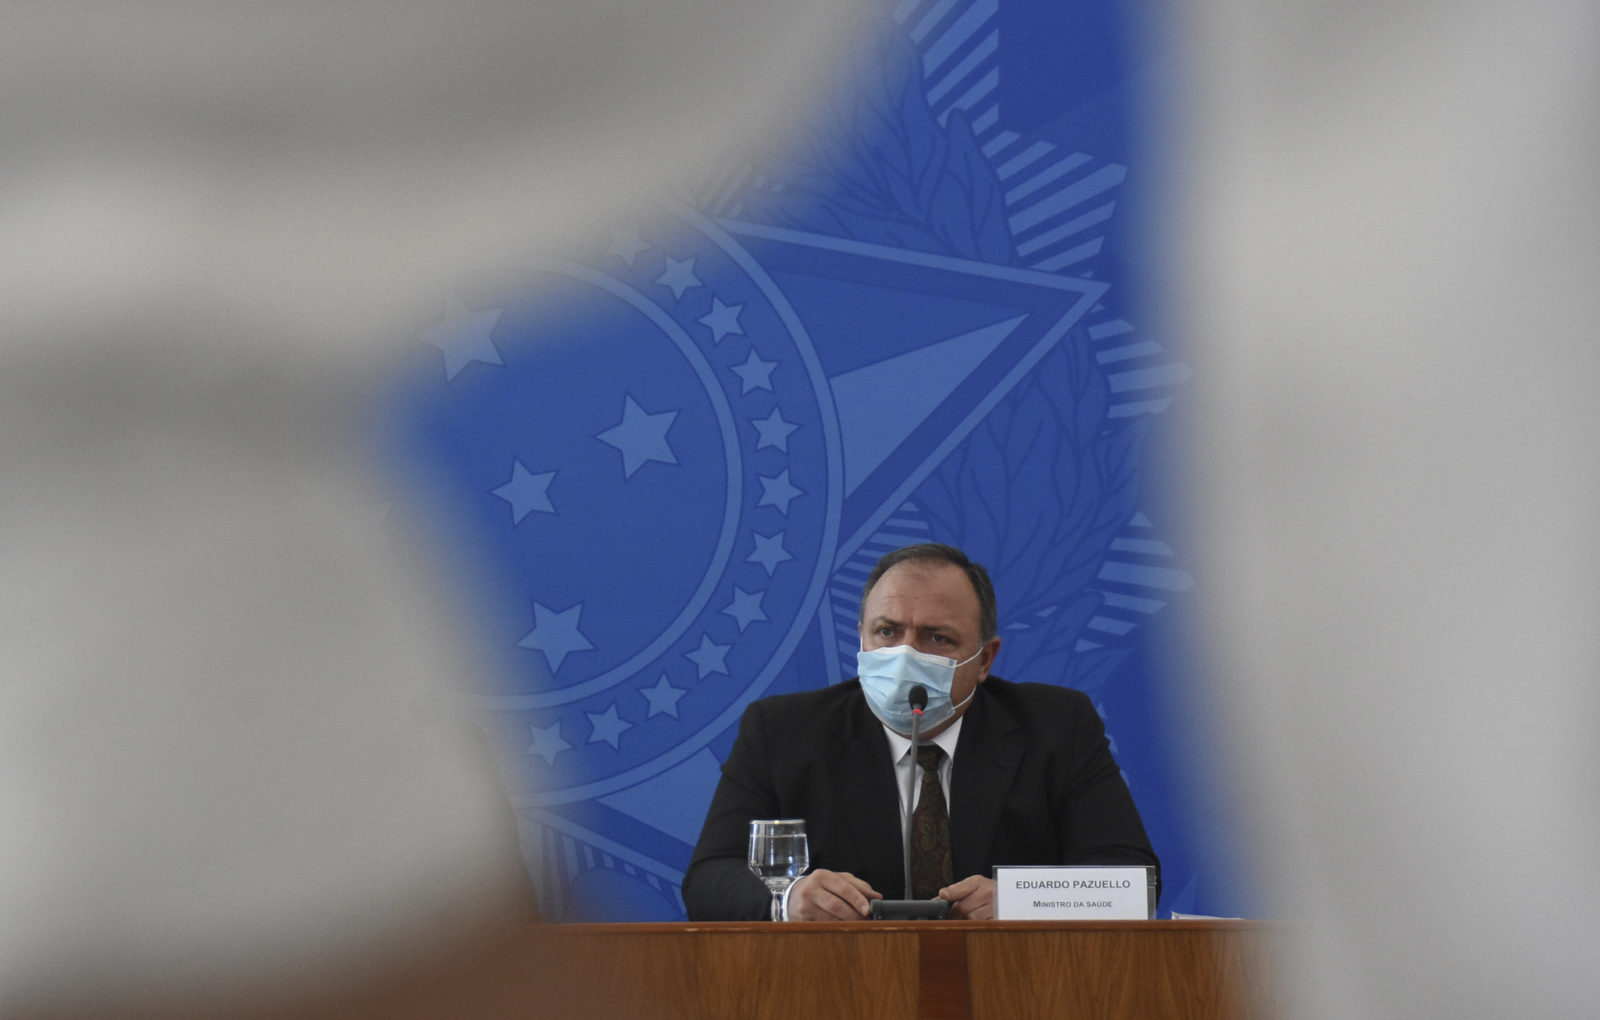 Pazuello, homem branco com cabelo curto, posa sentado de máscara descartável e terno preto, com o símbolo do Brasil atrás